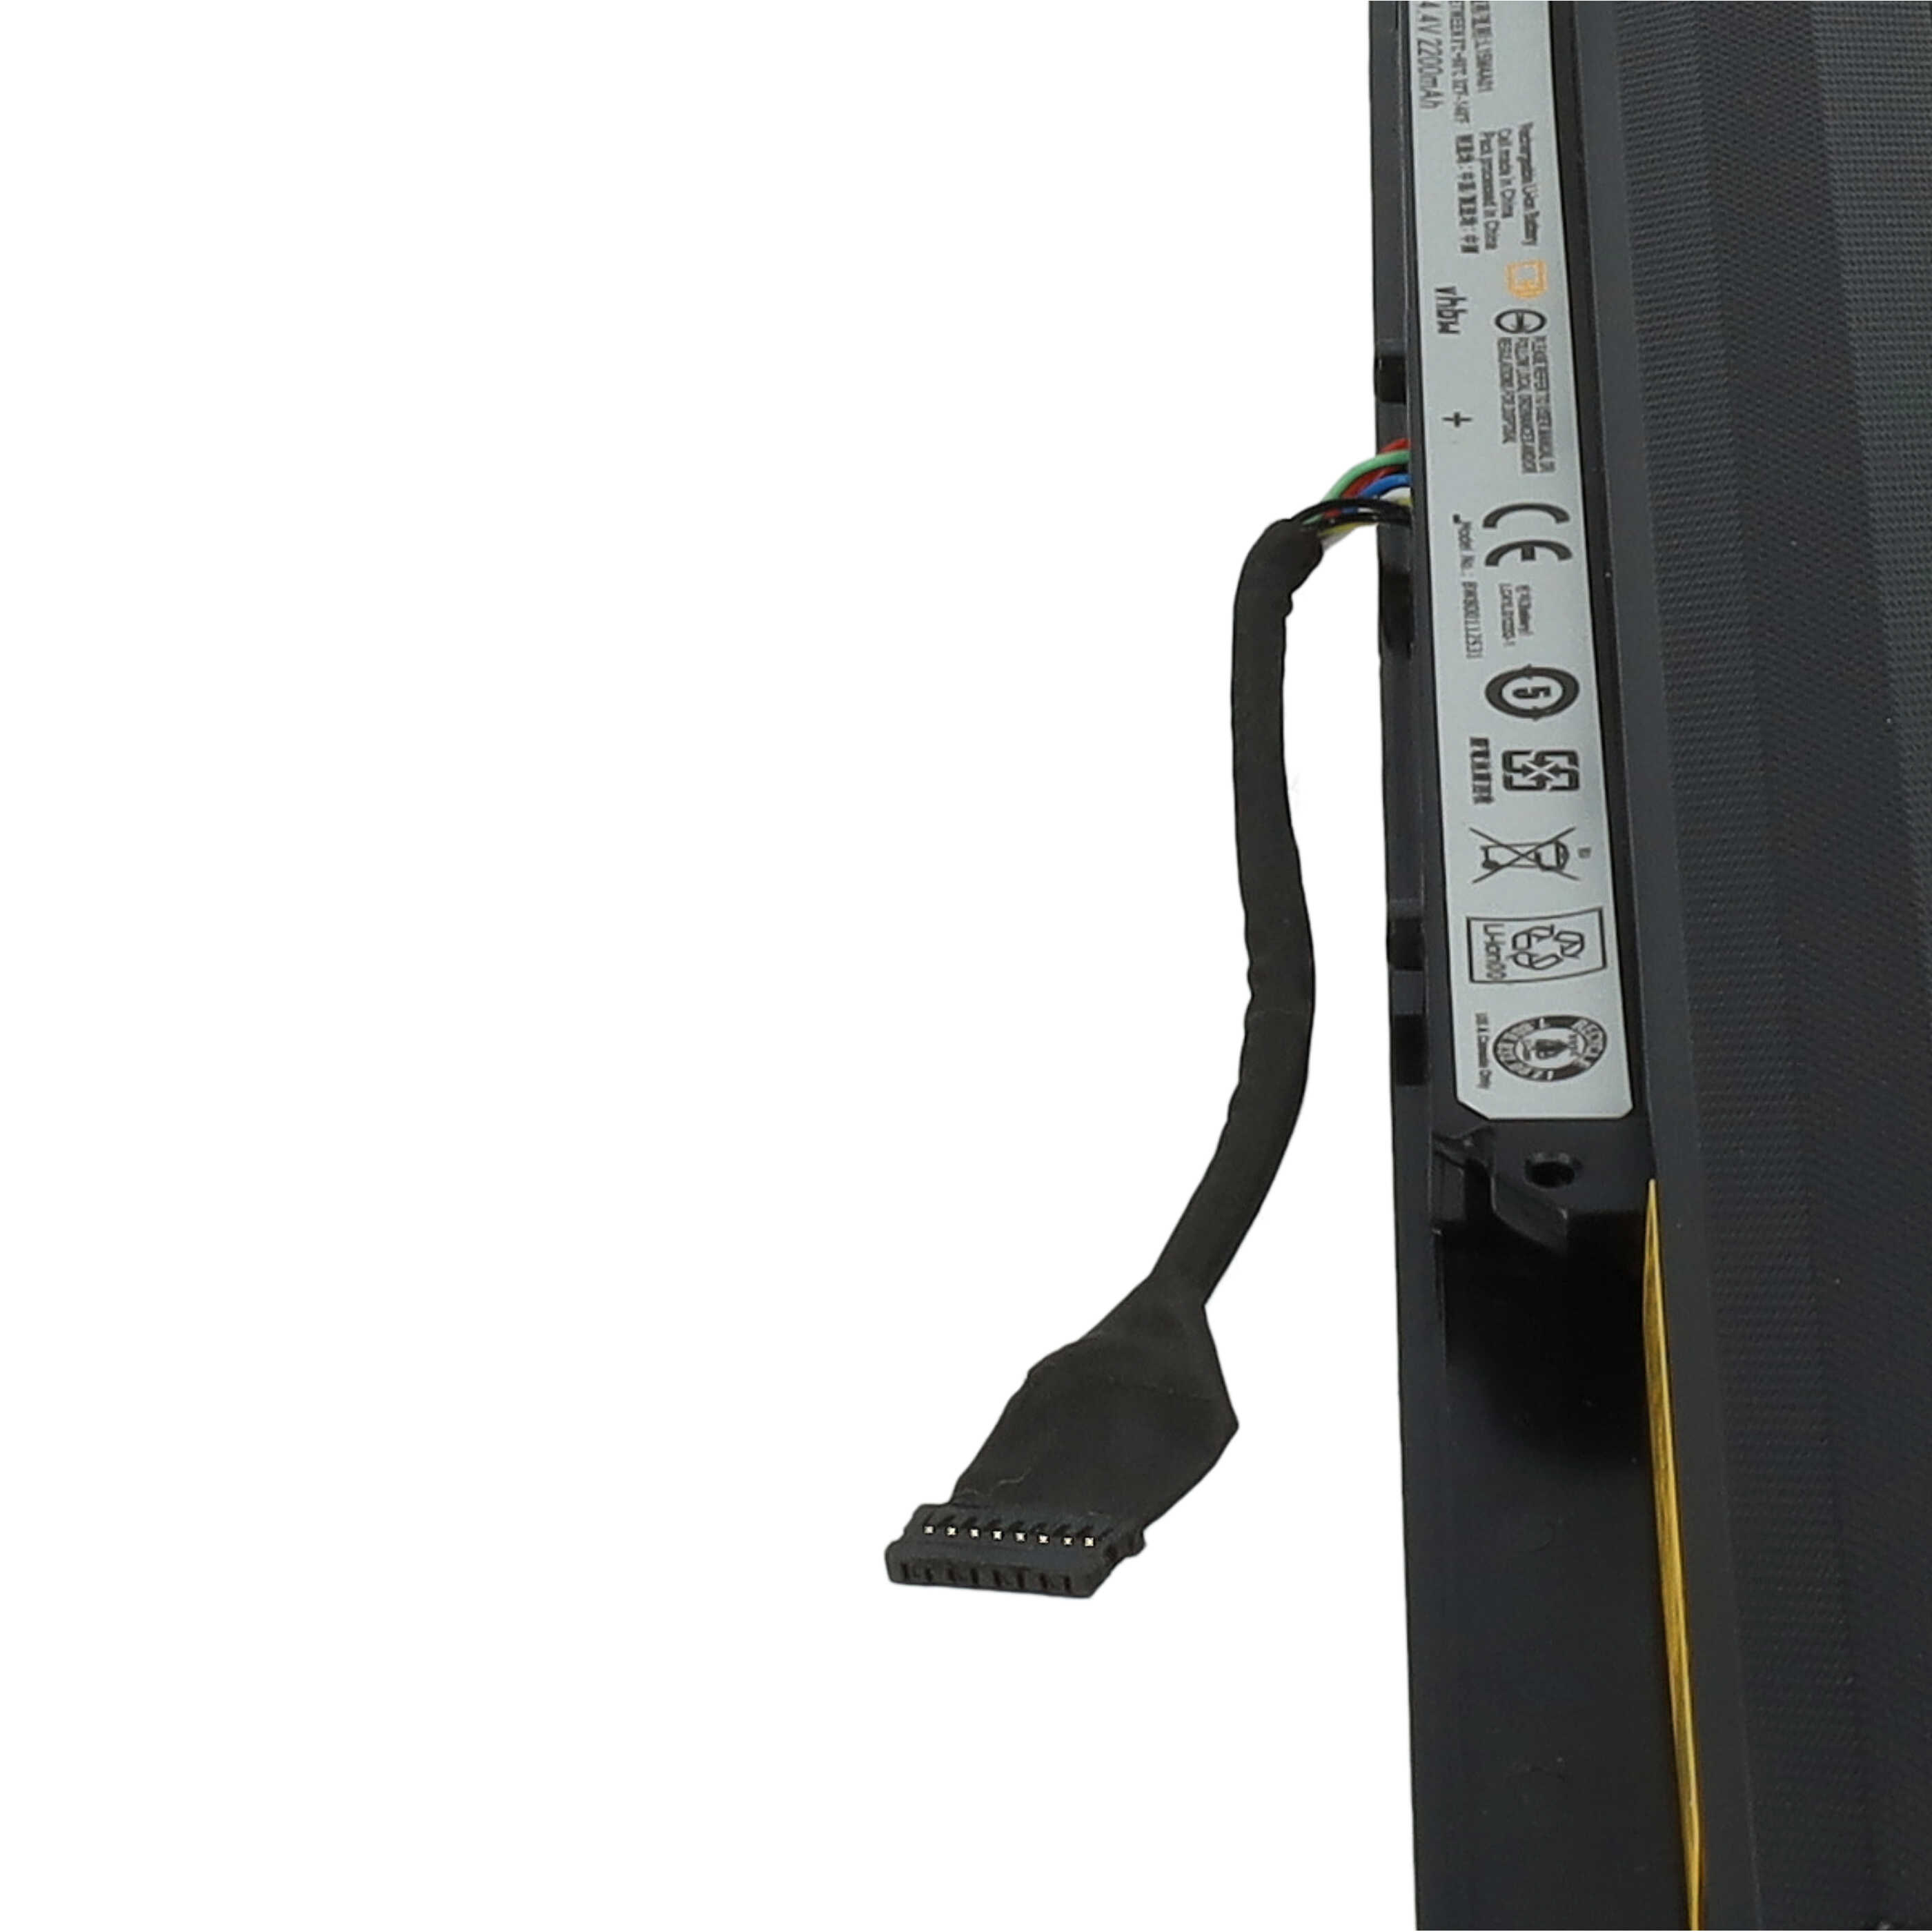 Batterie remplace Lenovo 5B10H70339, 5B10H70338 pour ordinateur portable - 2200mAh 14,4V Li-ion, noir